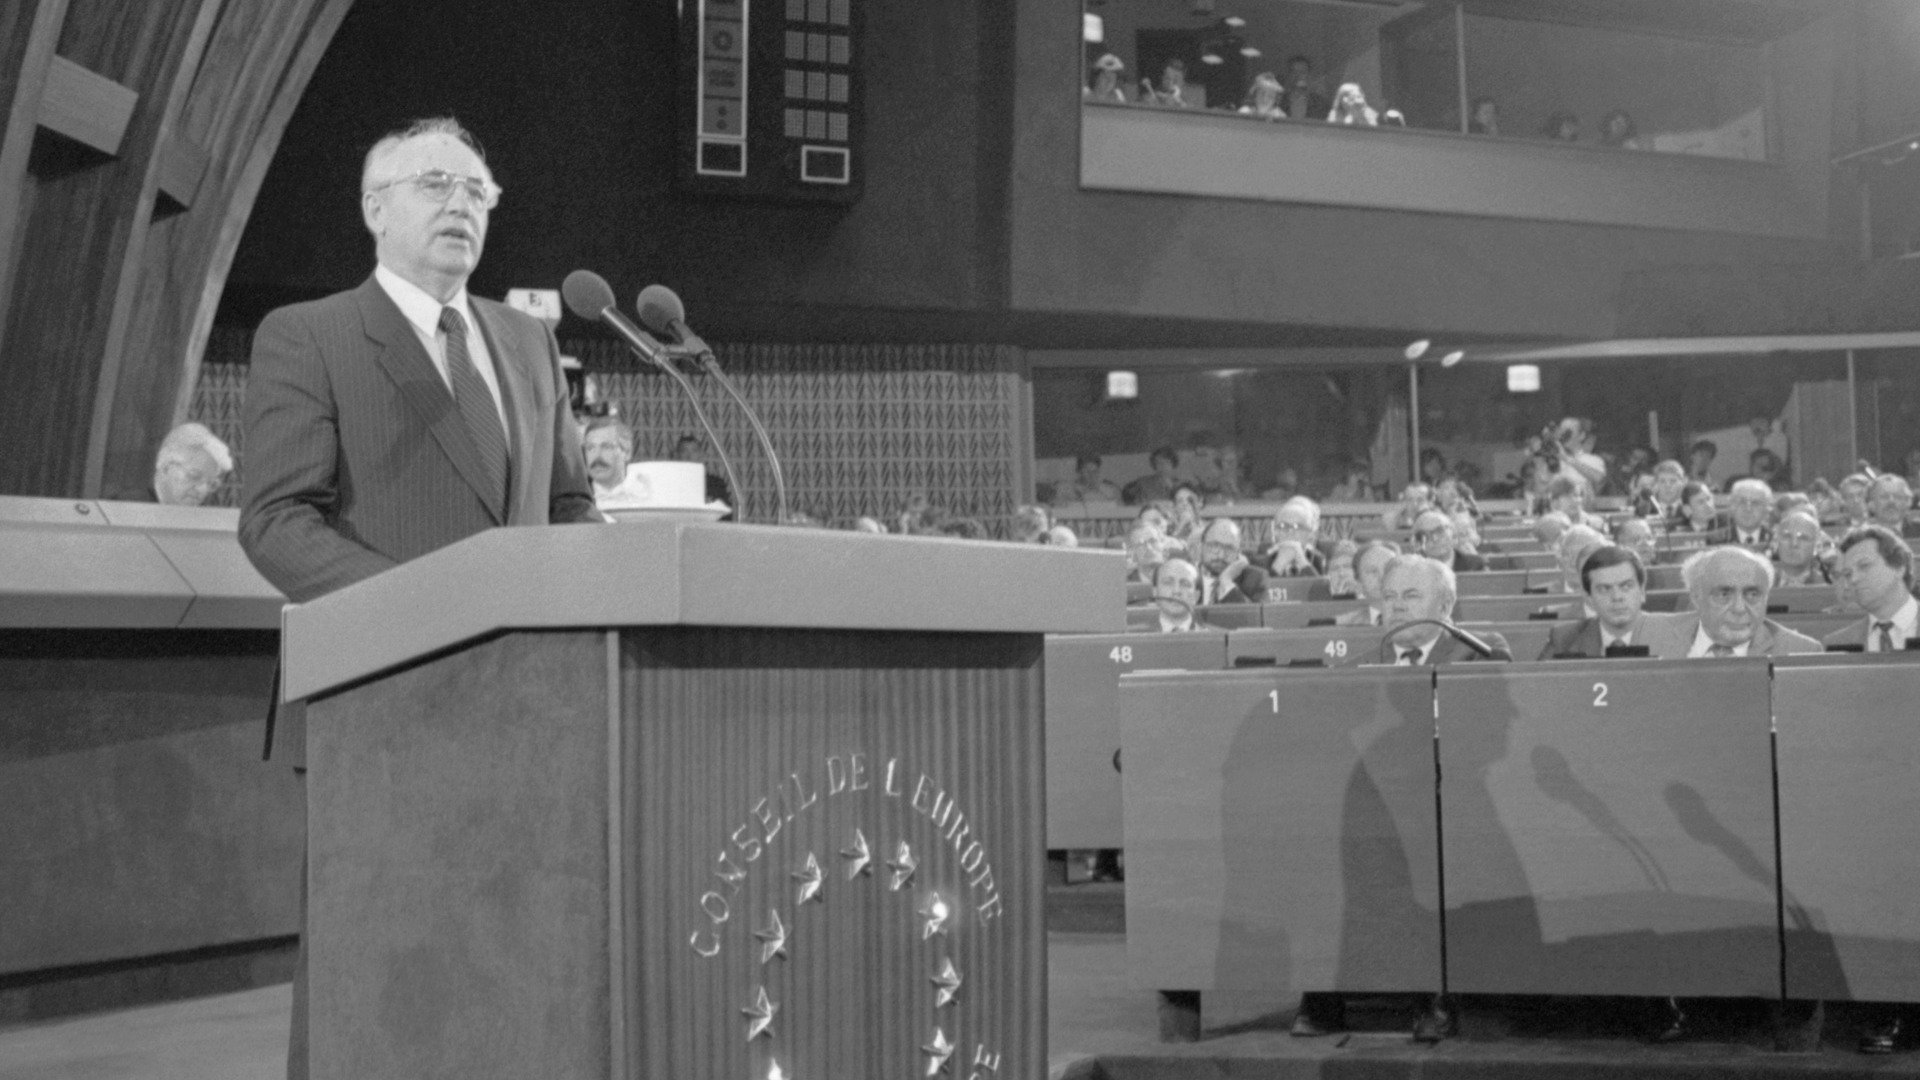 1989 г. Михаил Горбачев на парламентской сессии Совета Европы в Страсбурге. Фото: Юрий Лизунов, Александр Чумичев / Фотохроника ТАСС